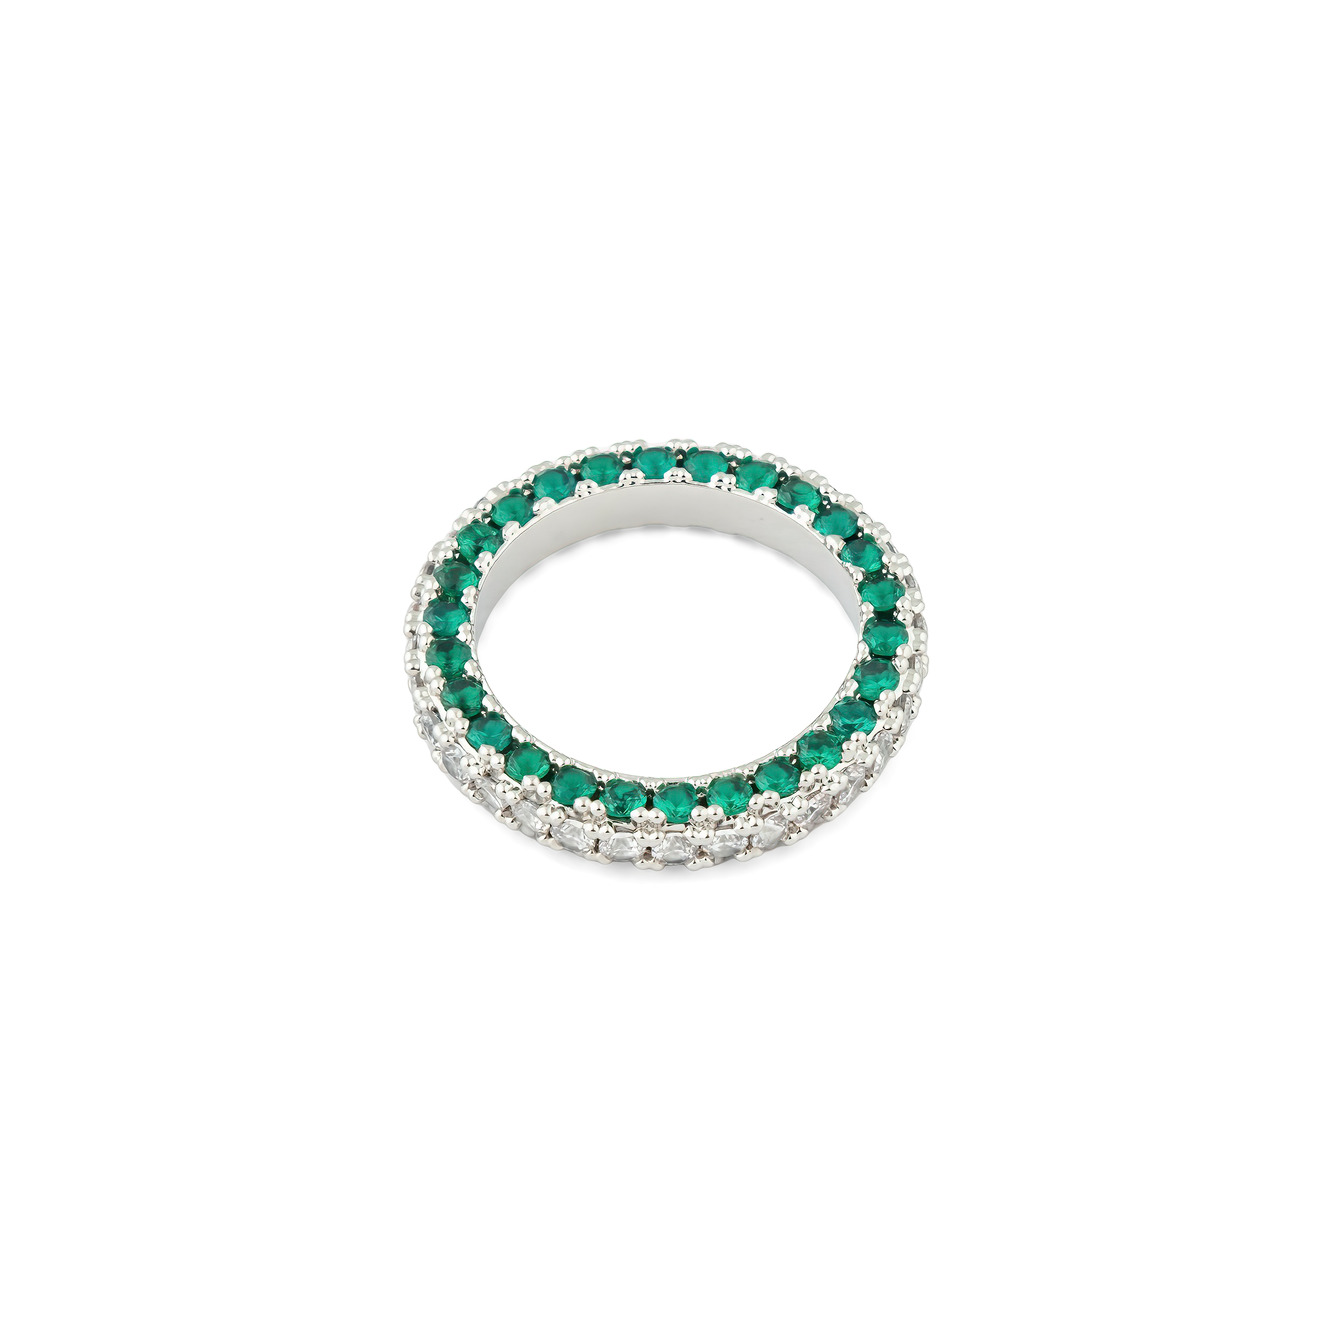 Herald Percy Серебристое кольцо с белыми и зелеными кристаллами herald percy серебристое незамкнутое кольцо с кристаллами